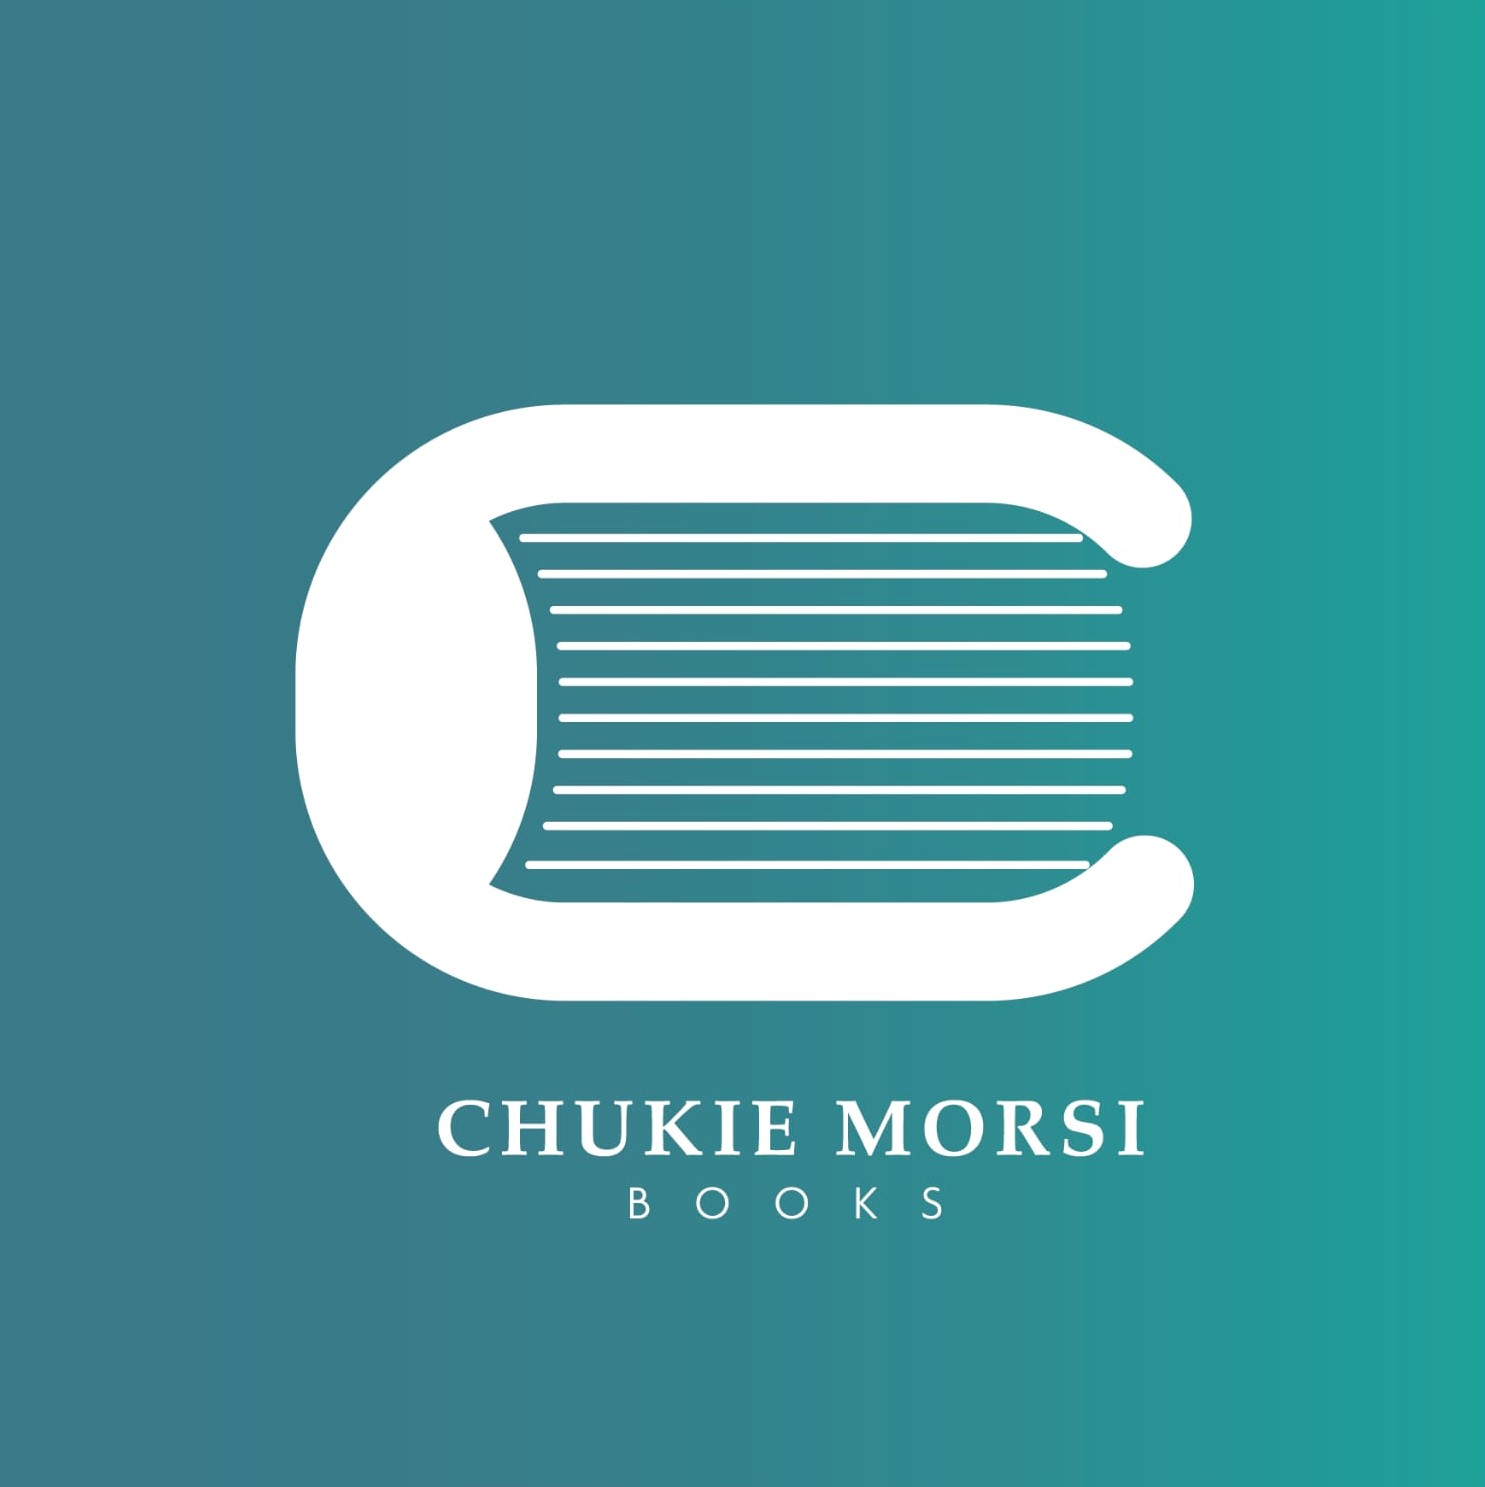 Chukie MORSI Books Logo